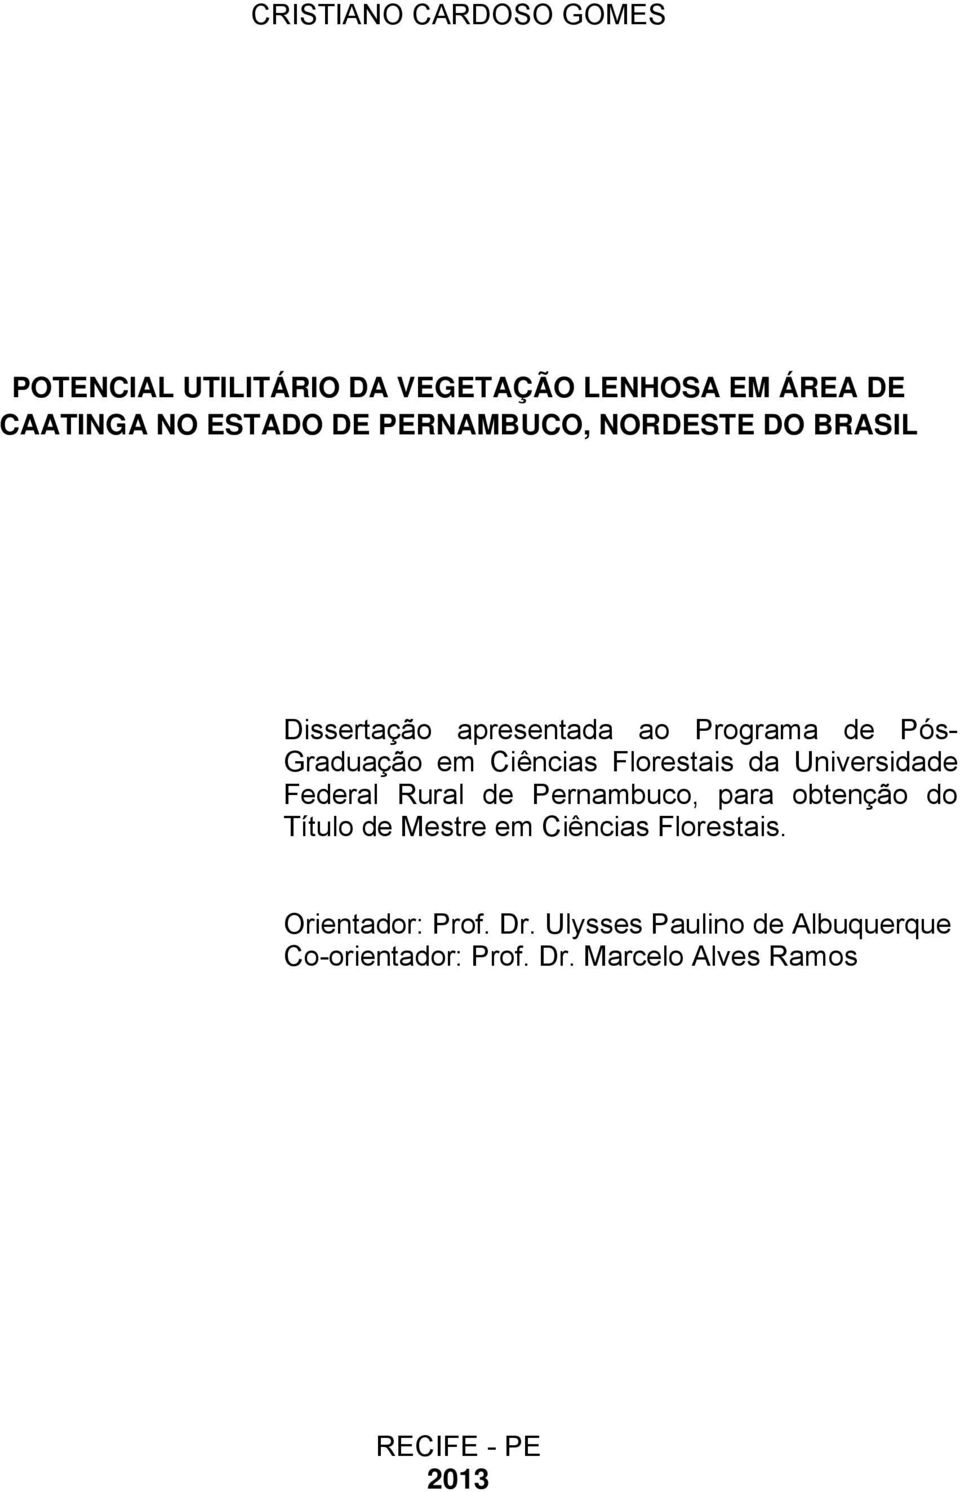 Florestais da Universidade Federal Rural de Pernambuco, para obtenção do Título de Mestre em Ciências